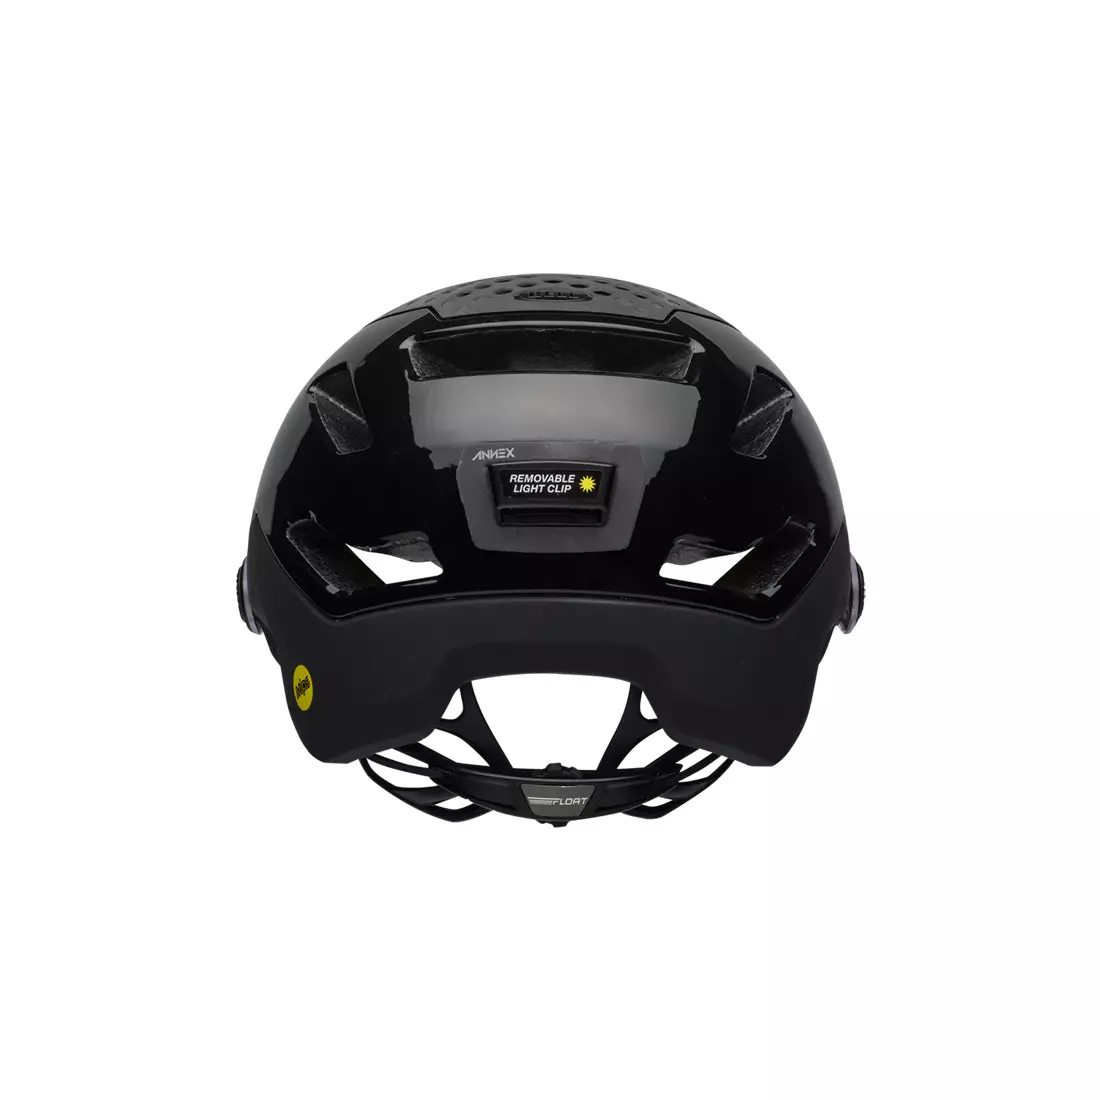 BELL ANNEX SHIELD INTEGRATED MIPS městská cyklistická helma, černá